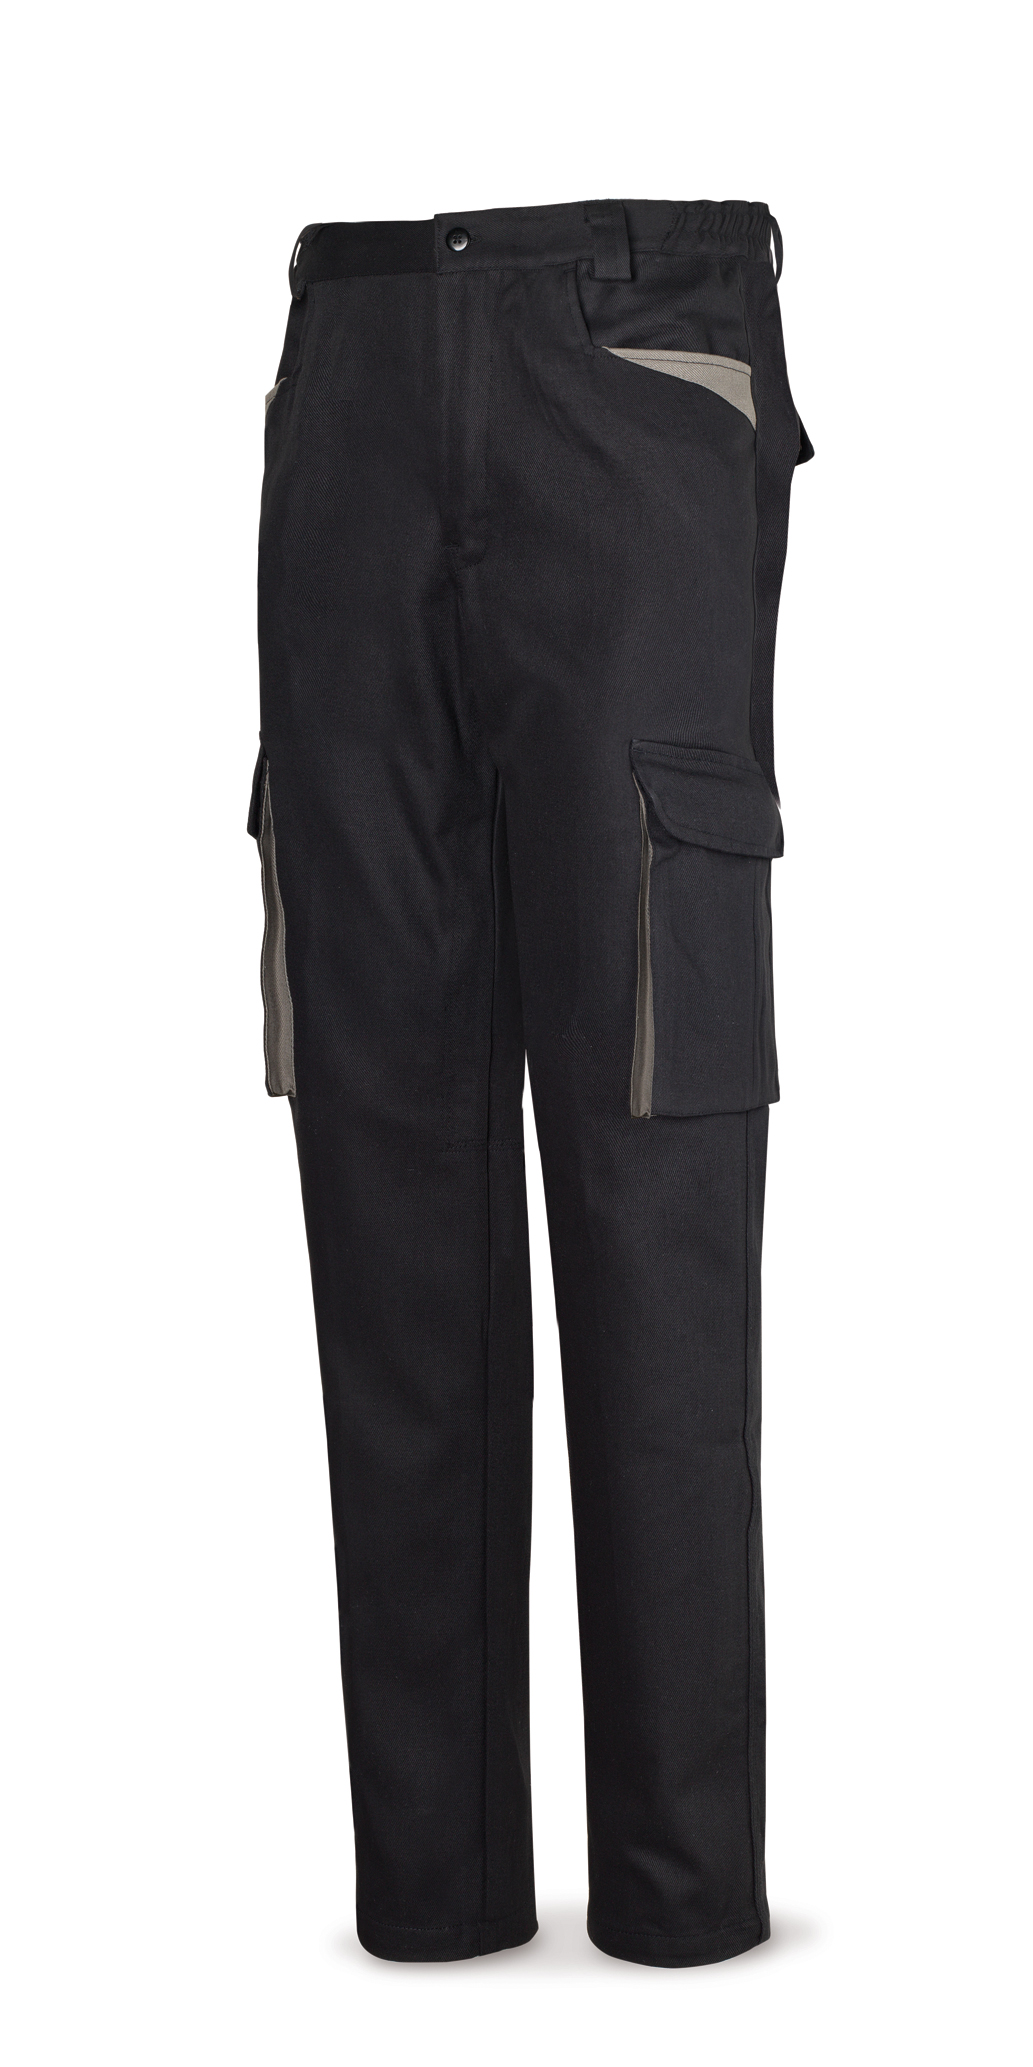 488-PN SupTop Vetements de travail laboral Série SuperTop Pantalon en coton 270 g. Coleur: Noir. 